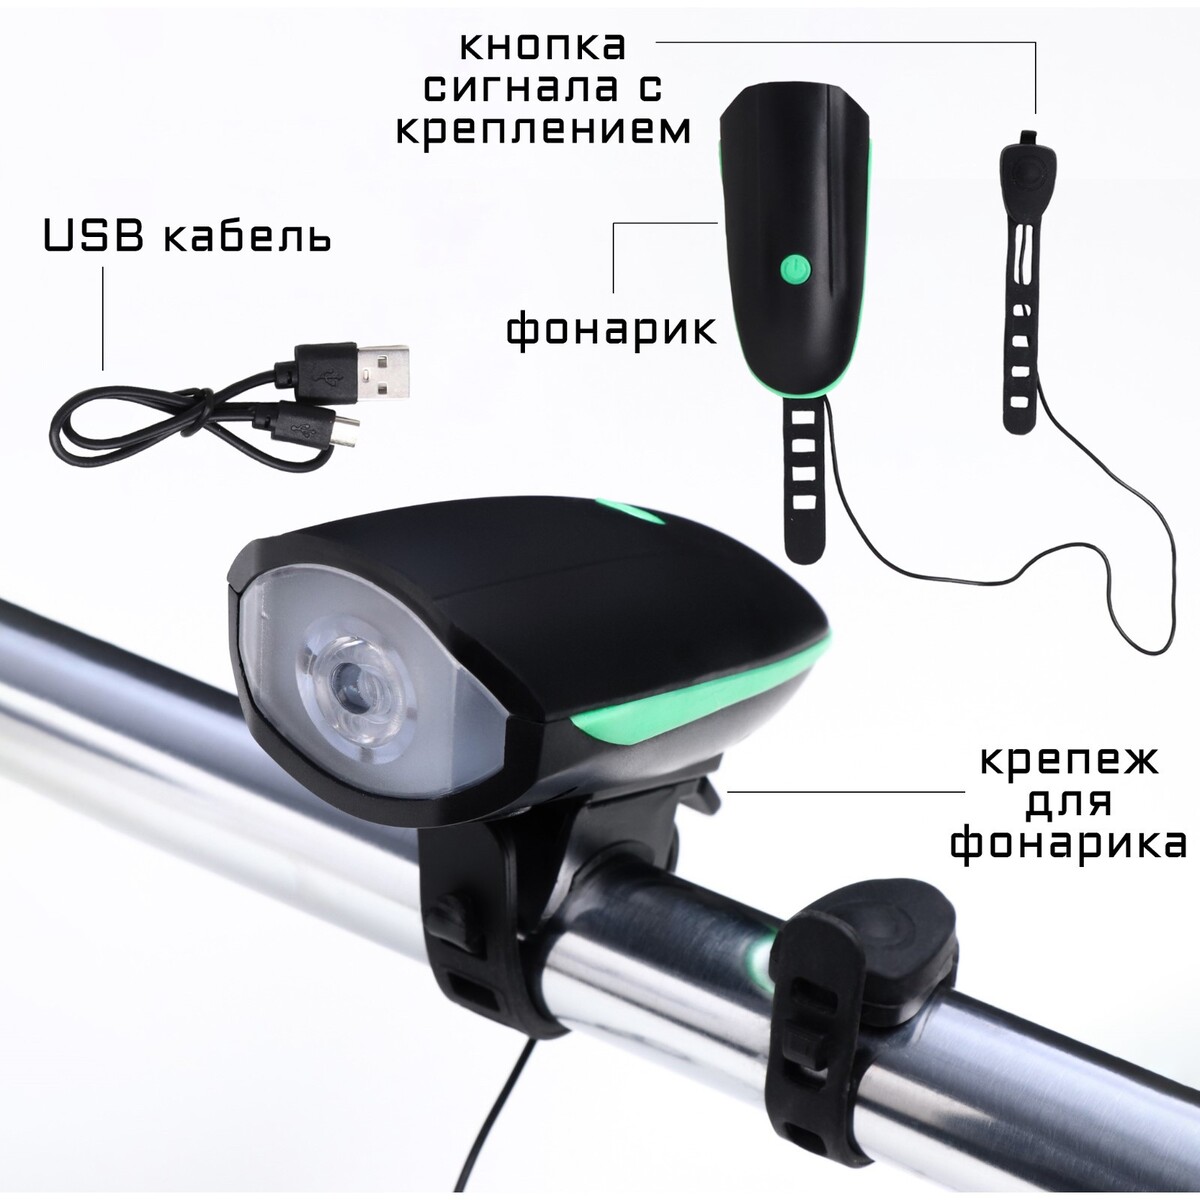 Фонарь велосипедный фонарь велосипедный rockbros пеедний использование как блок питания телефона 1000 люмен rb bc05u301